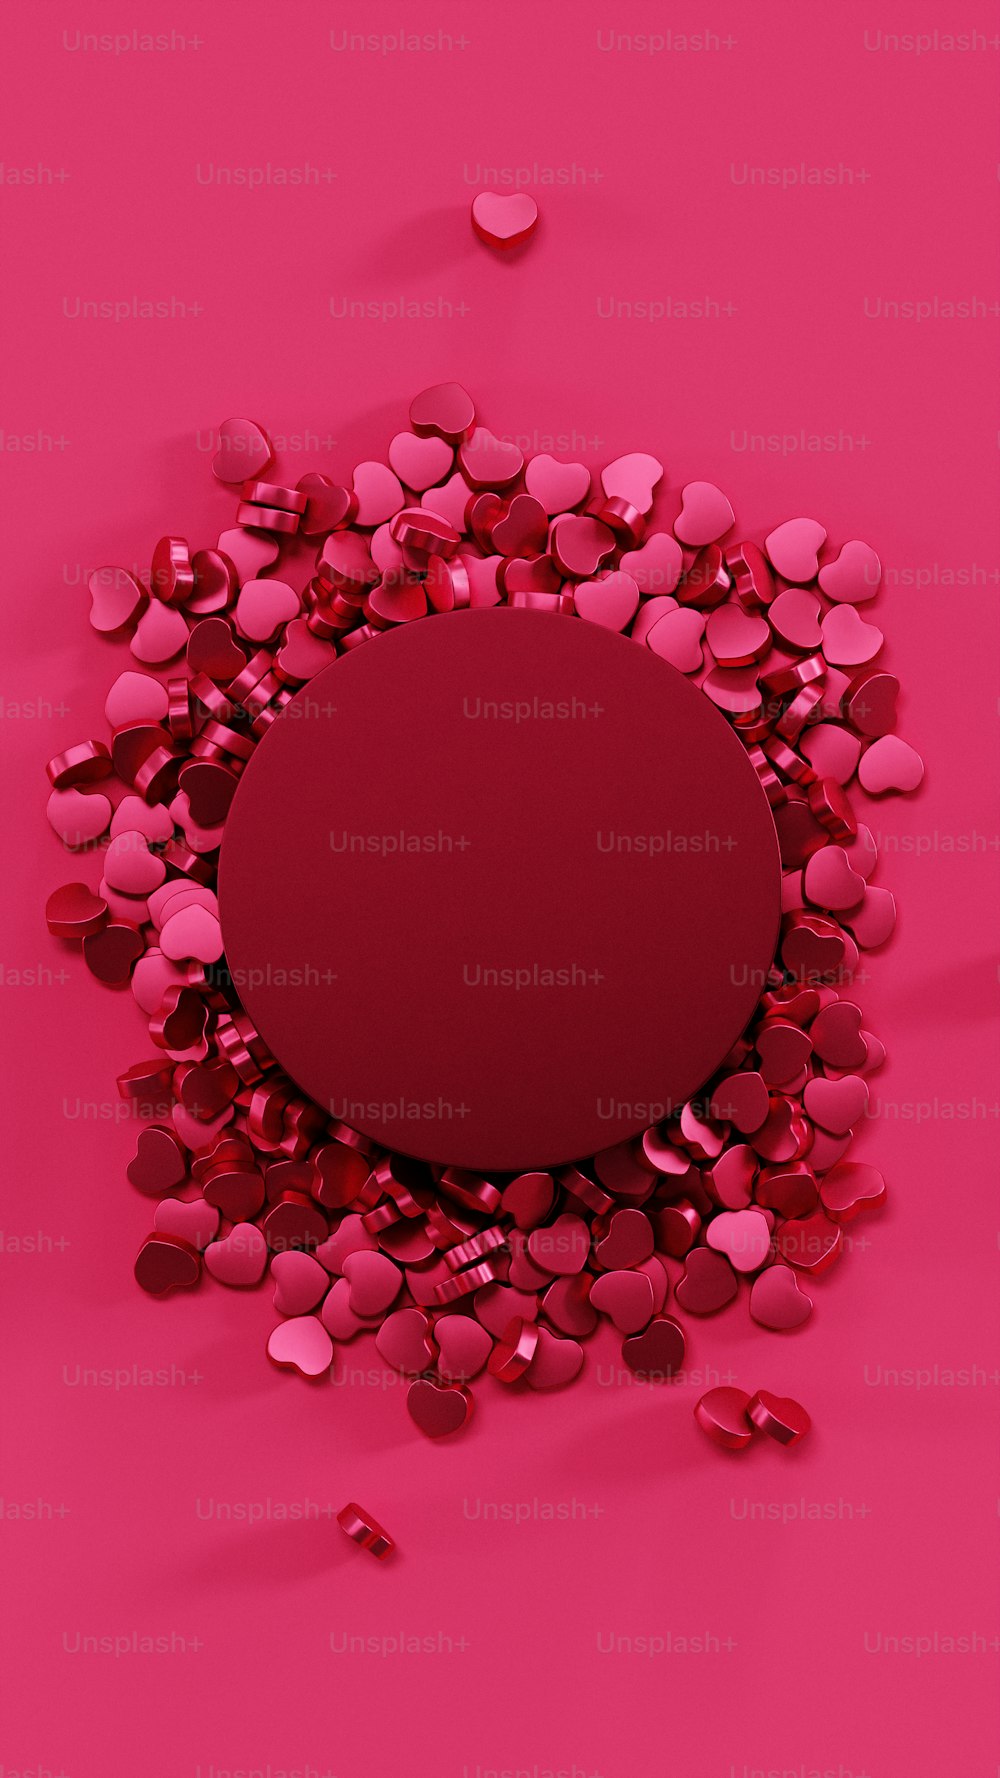 un cercle rouge entouré de cœurs sur fond rose